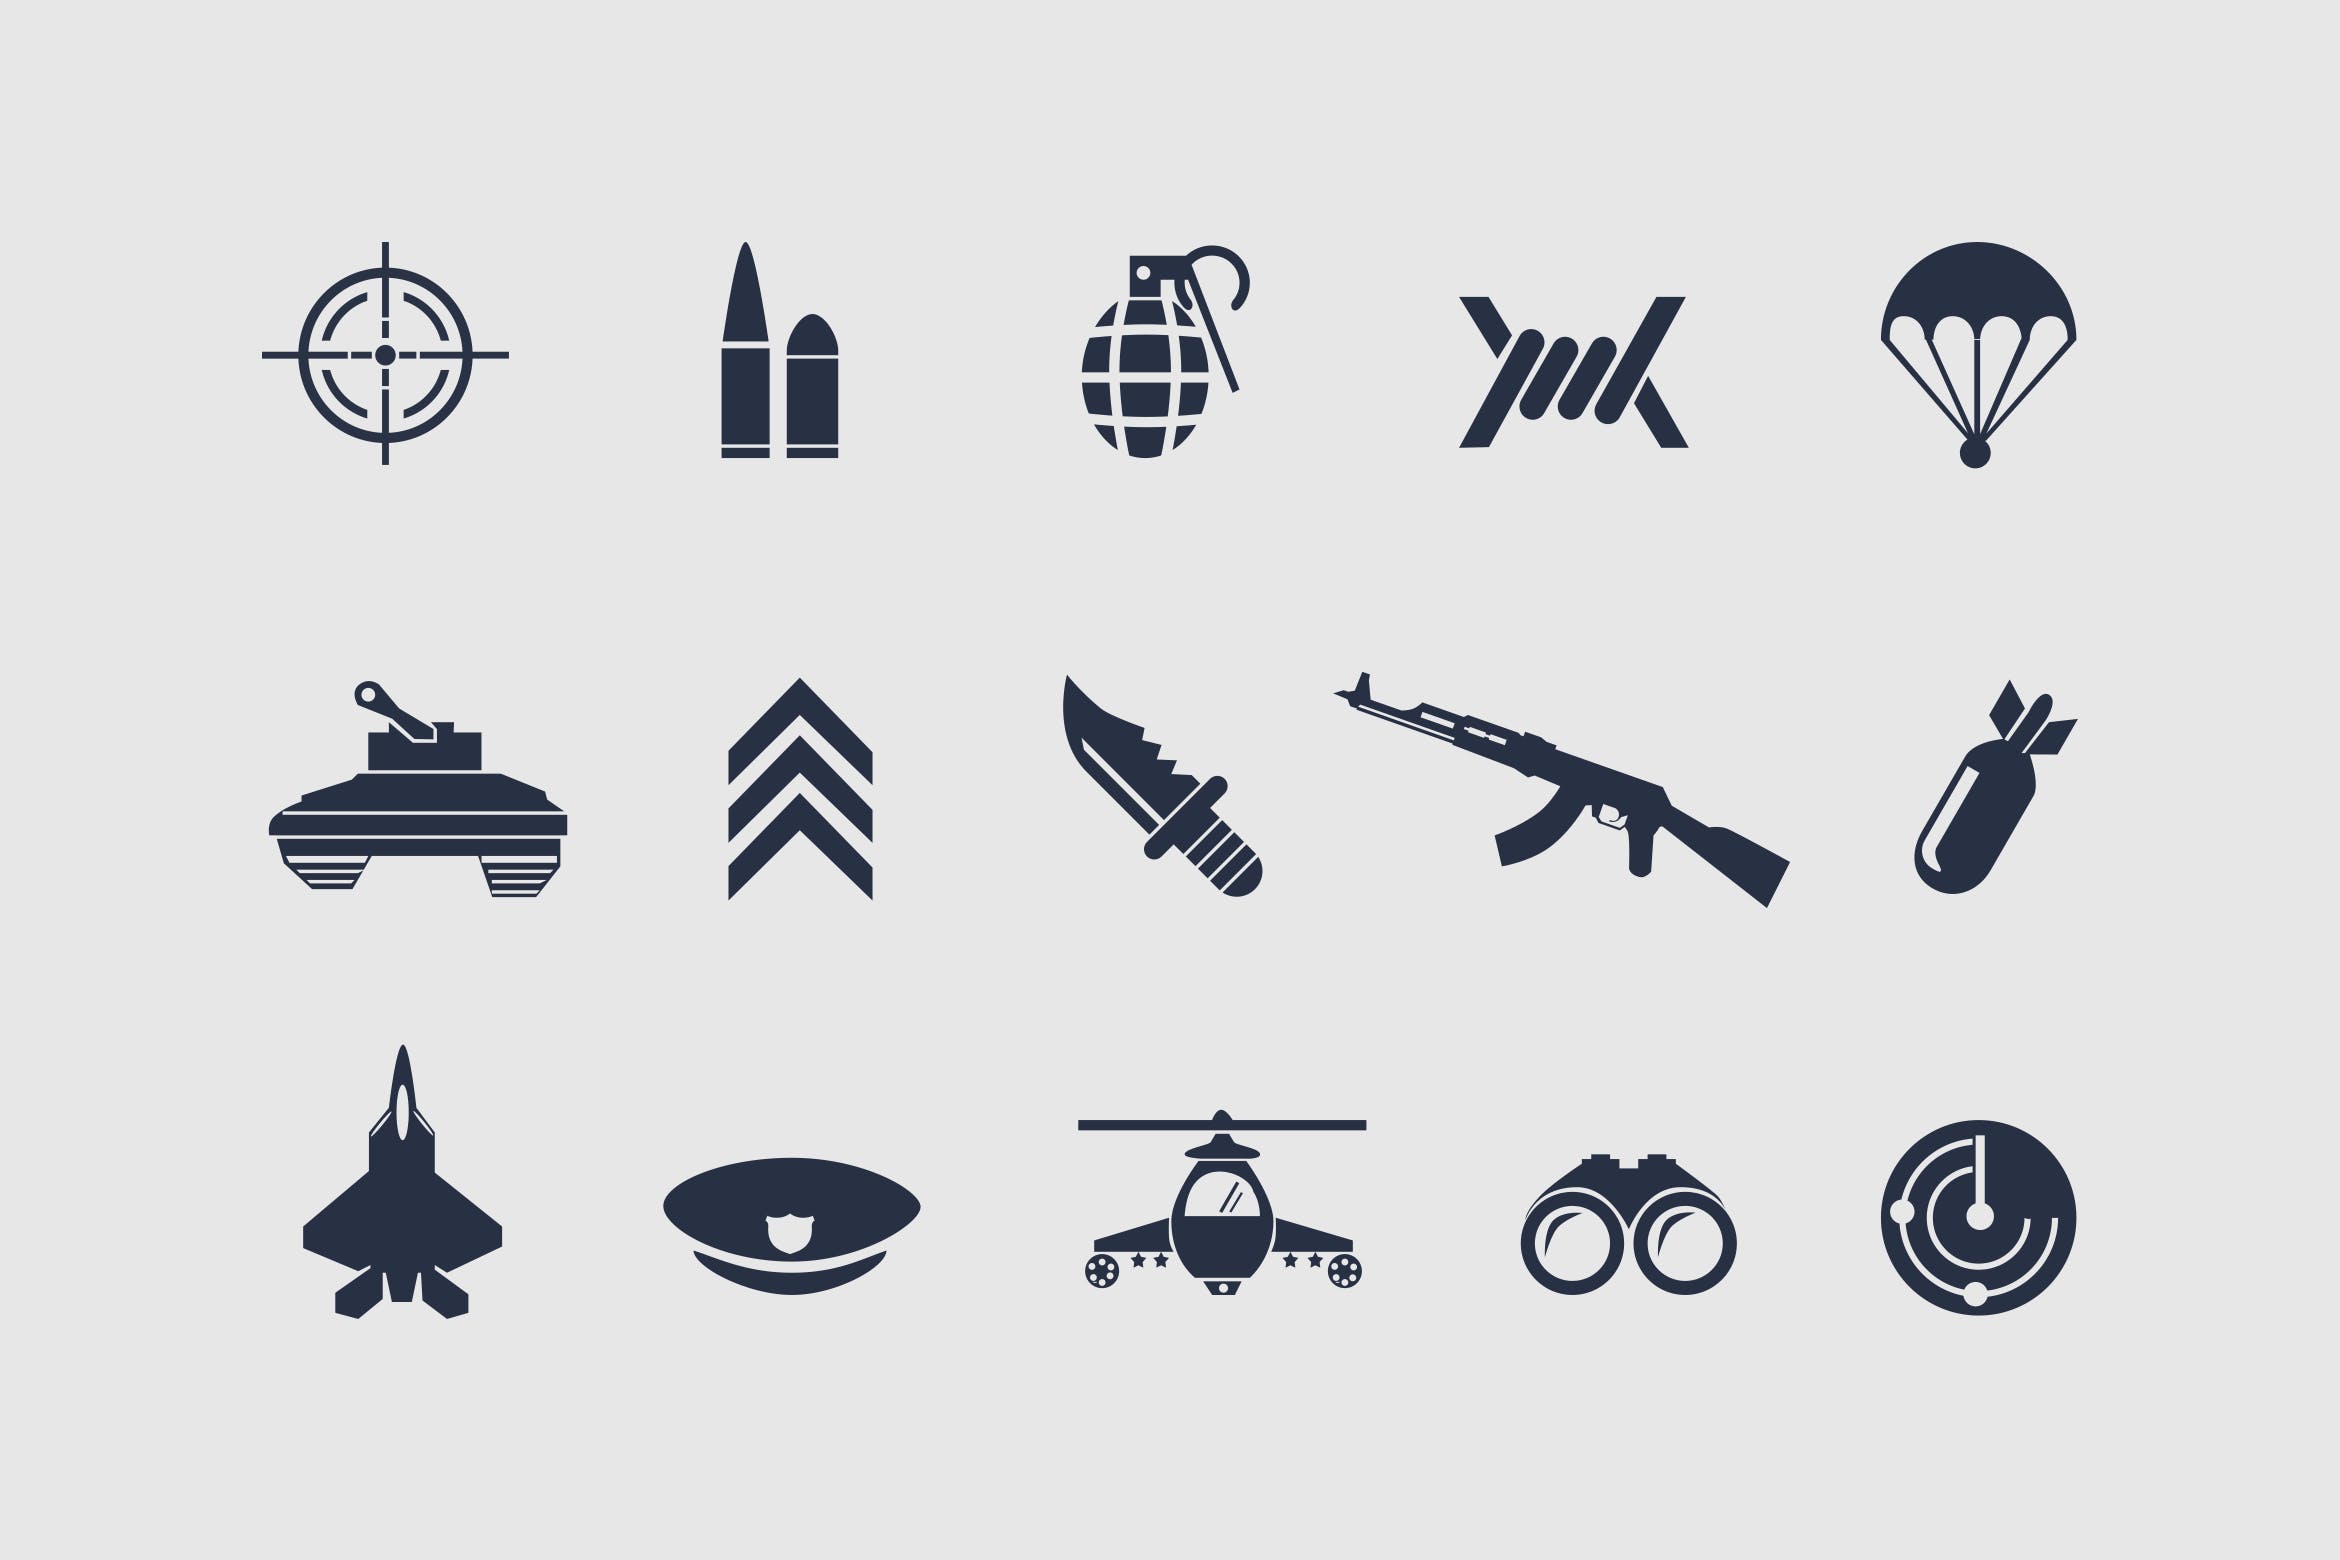 12枚军事主题矢量16图库精选图标 12 Military Icons插图